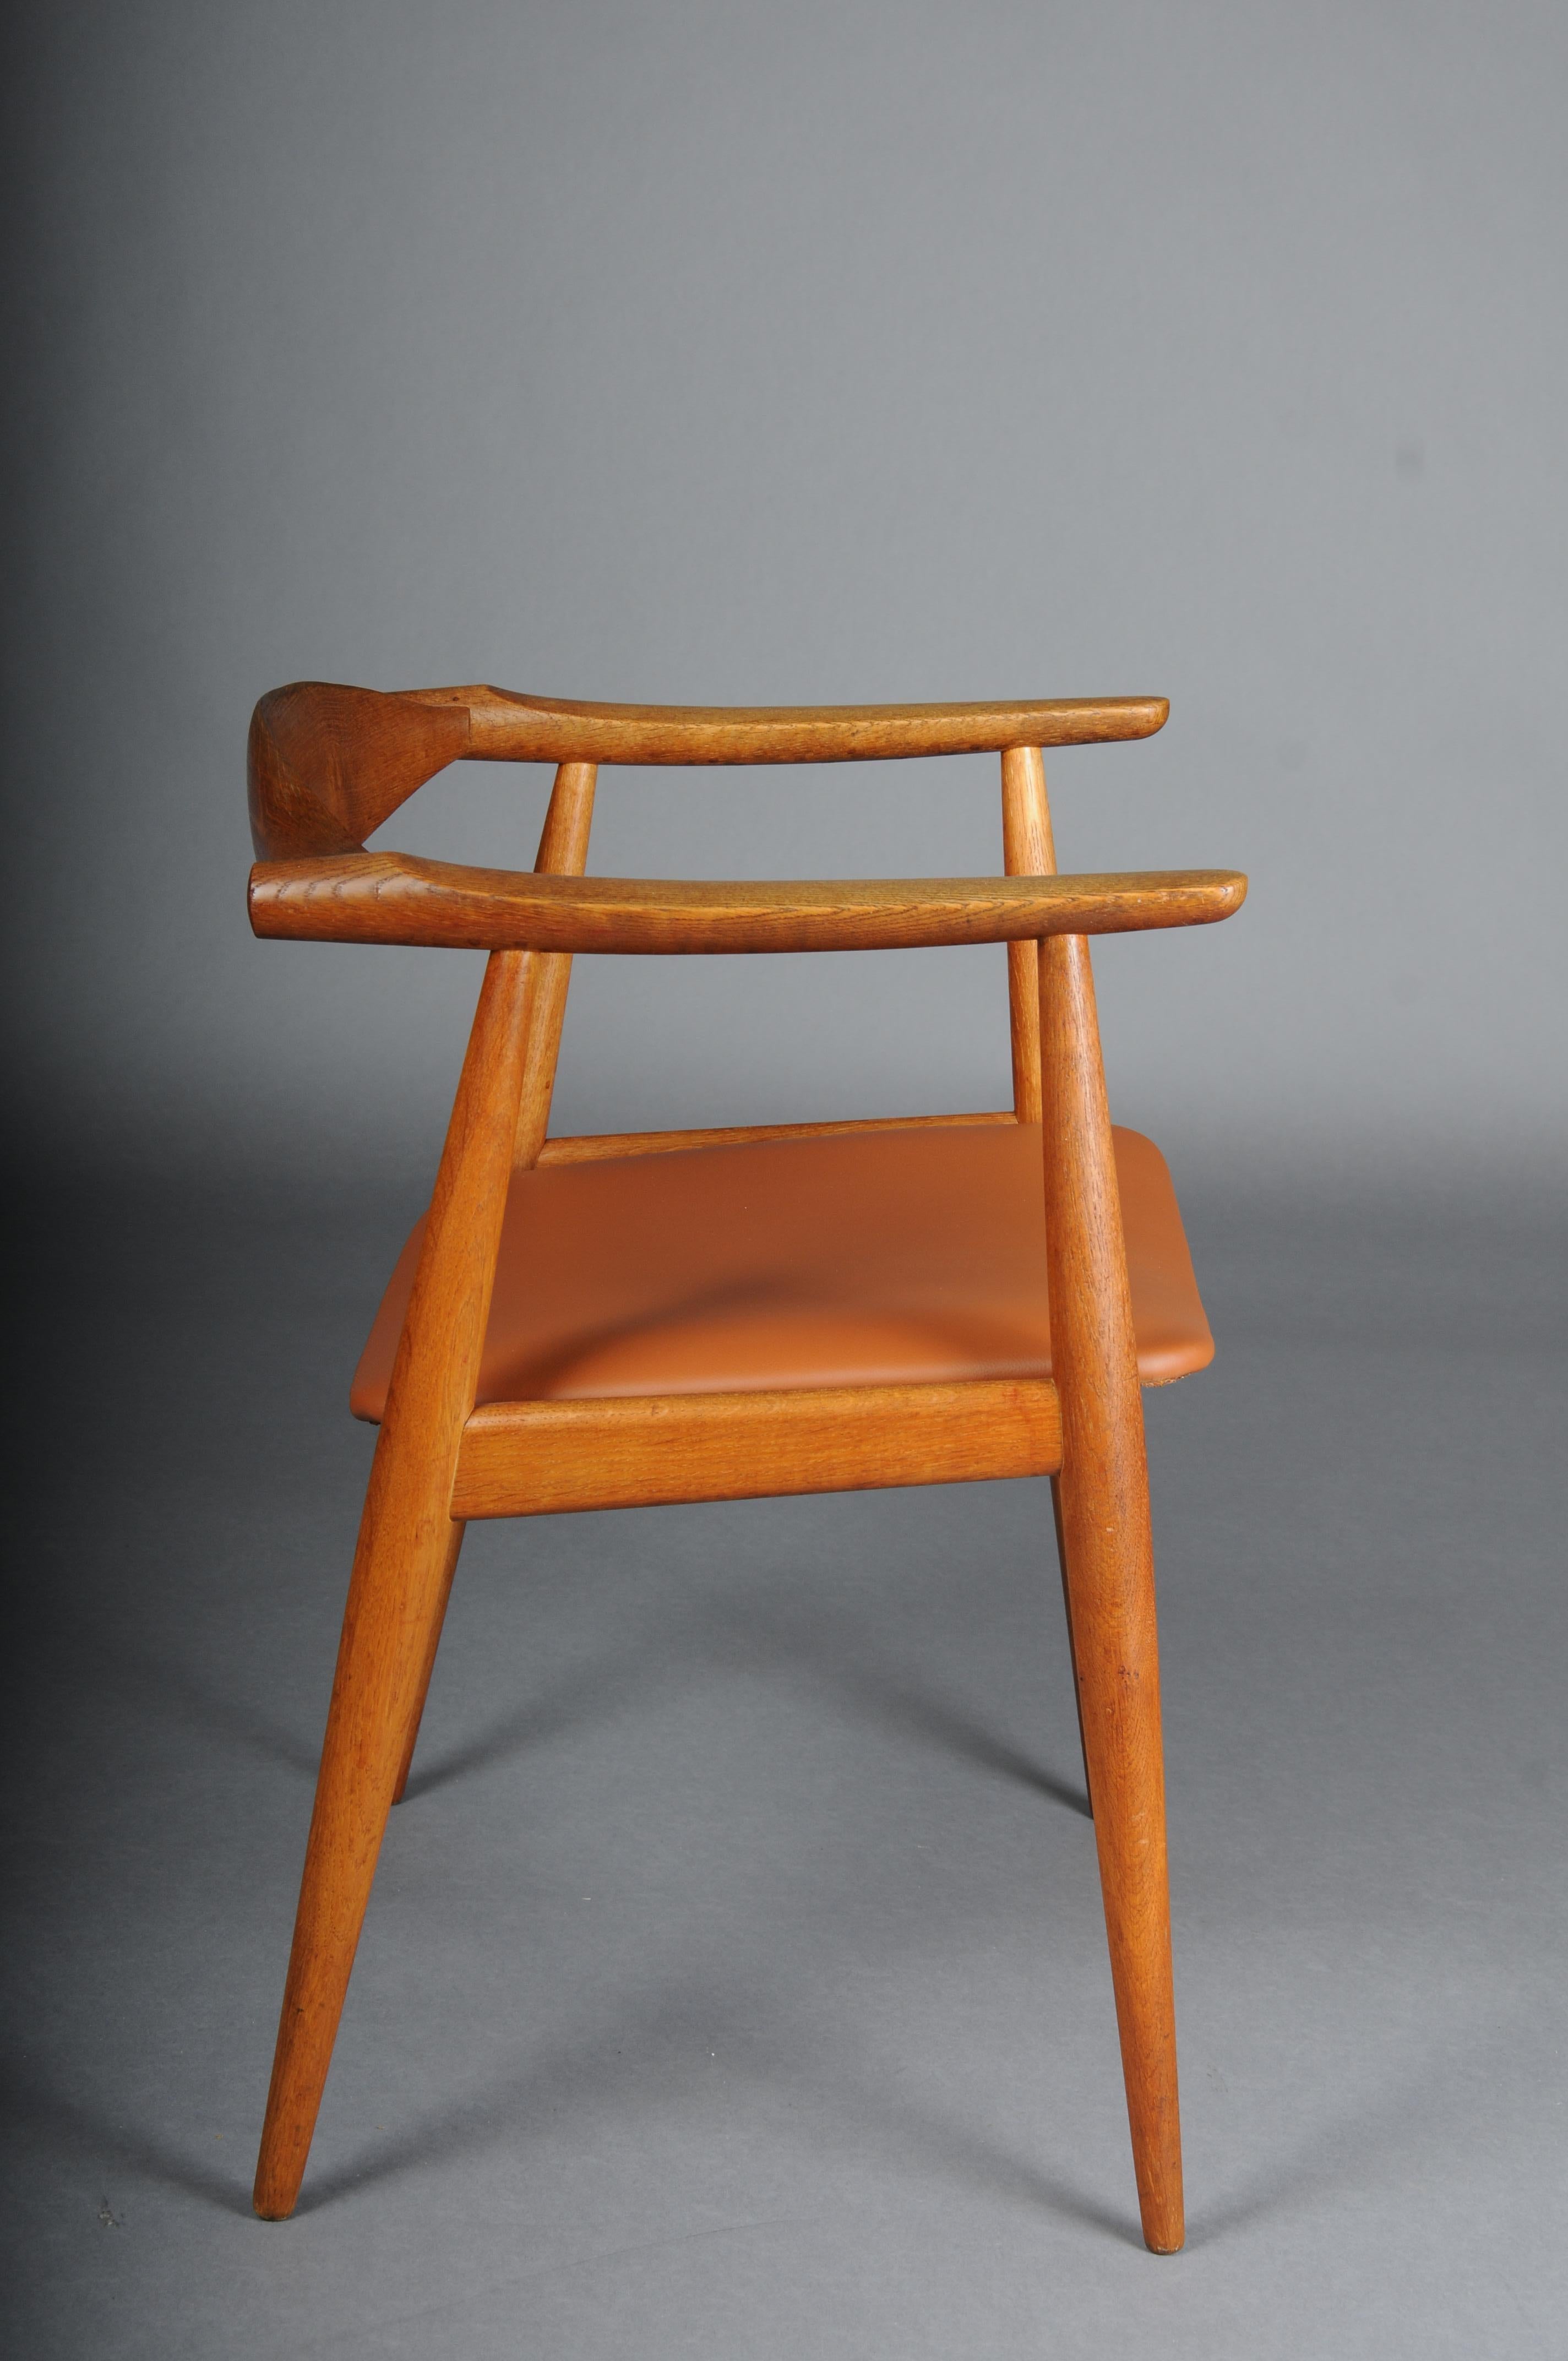 HANS J. WEGNER. Armchair, Teak/leather, Model CH-35, Carl Hansen & Son, Denmark. For Sale 4